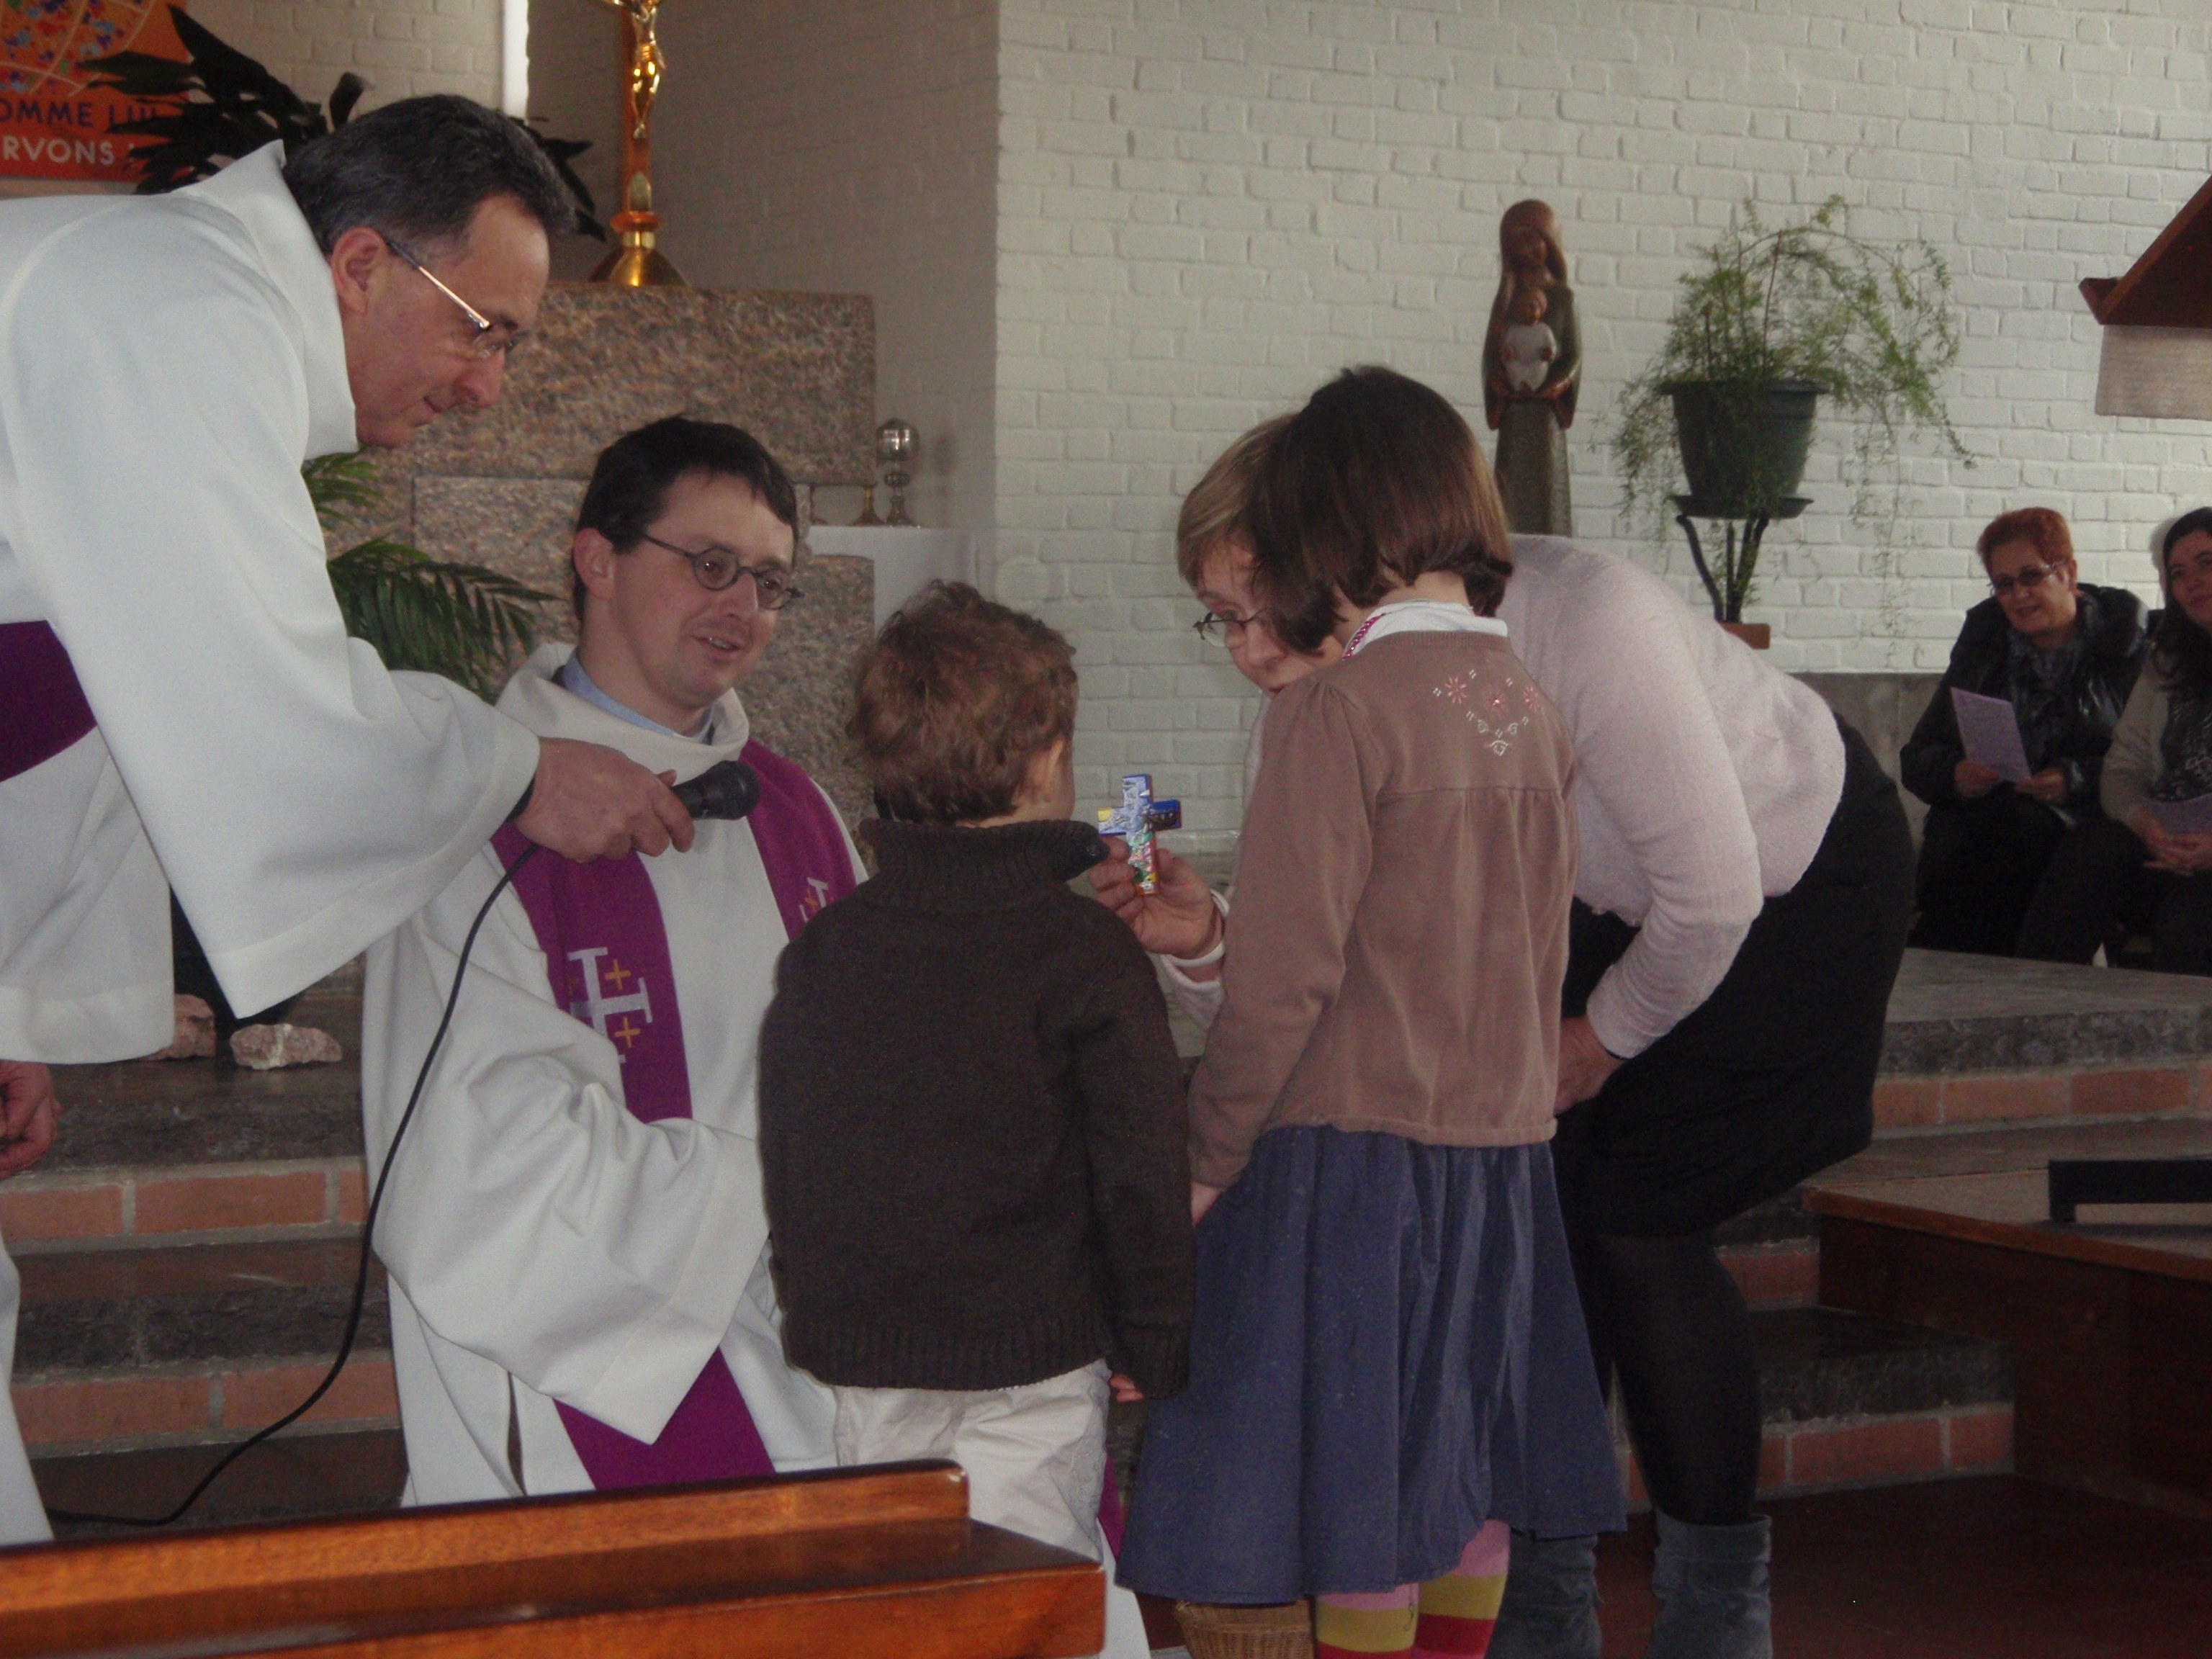 Les enfants en chemin vers le baptême reçoivent une croix